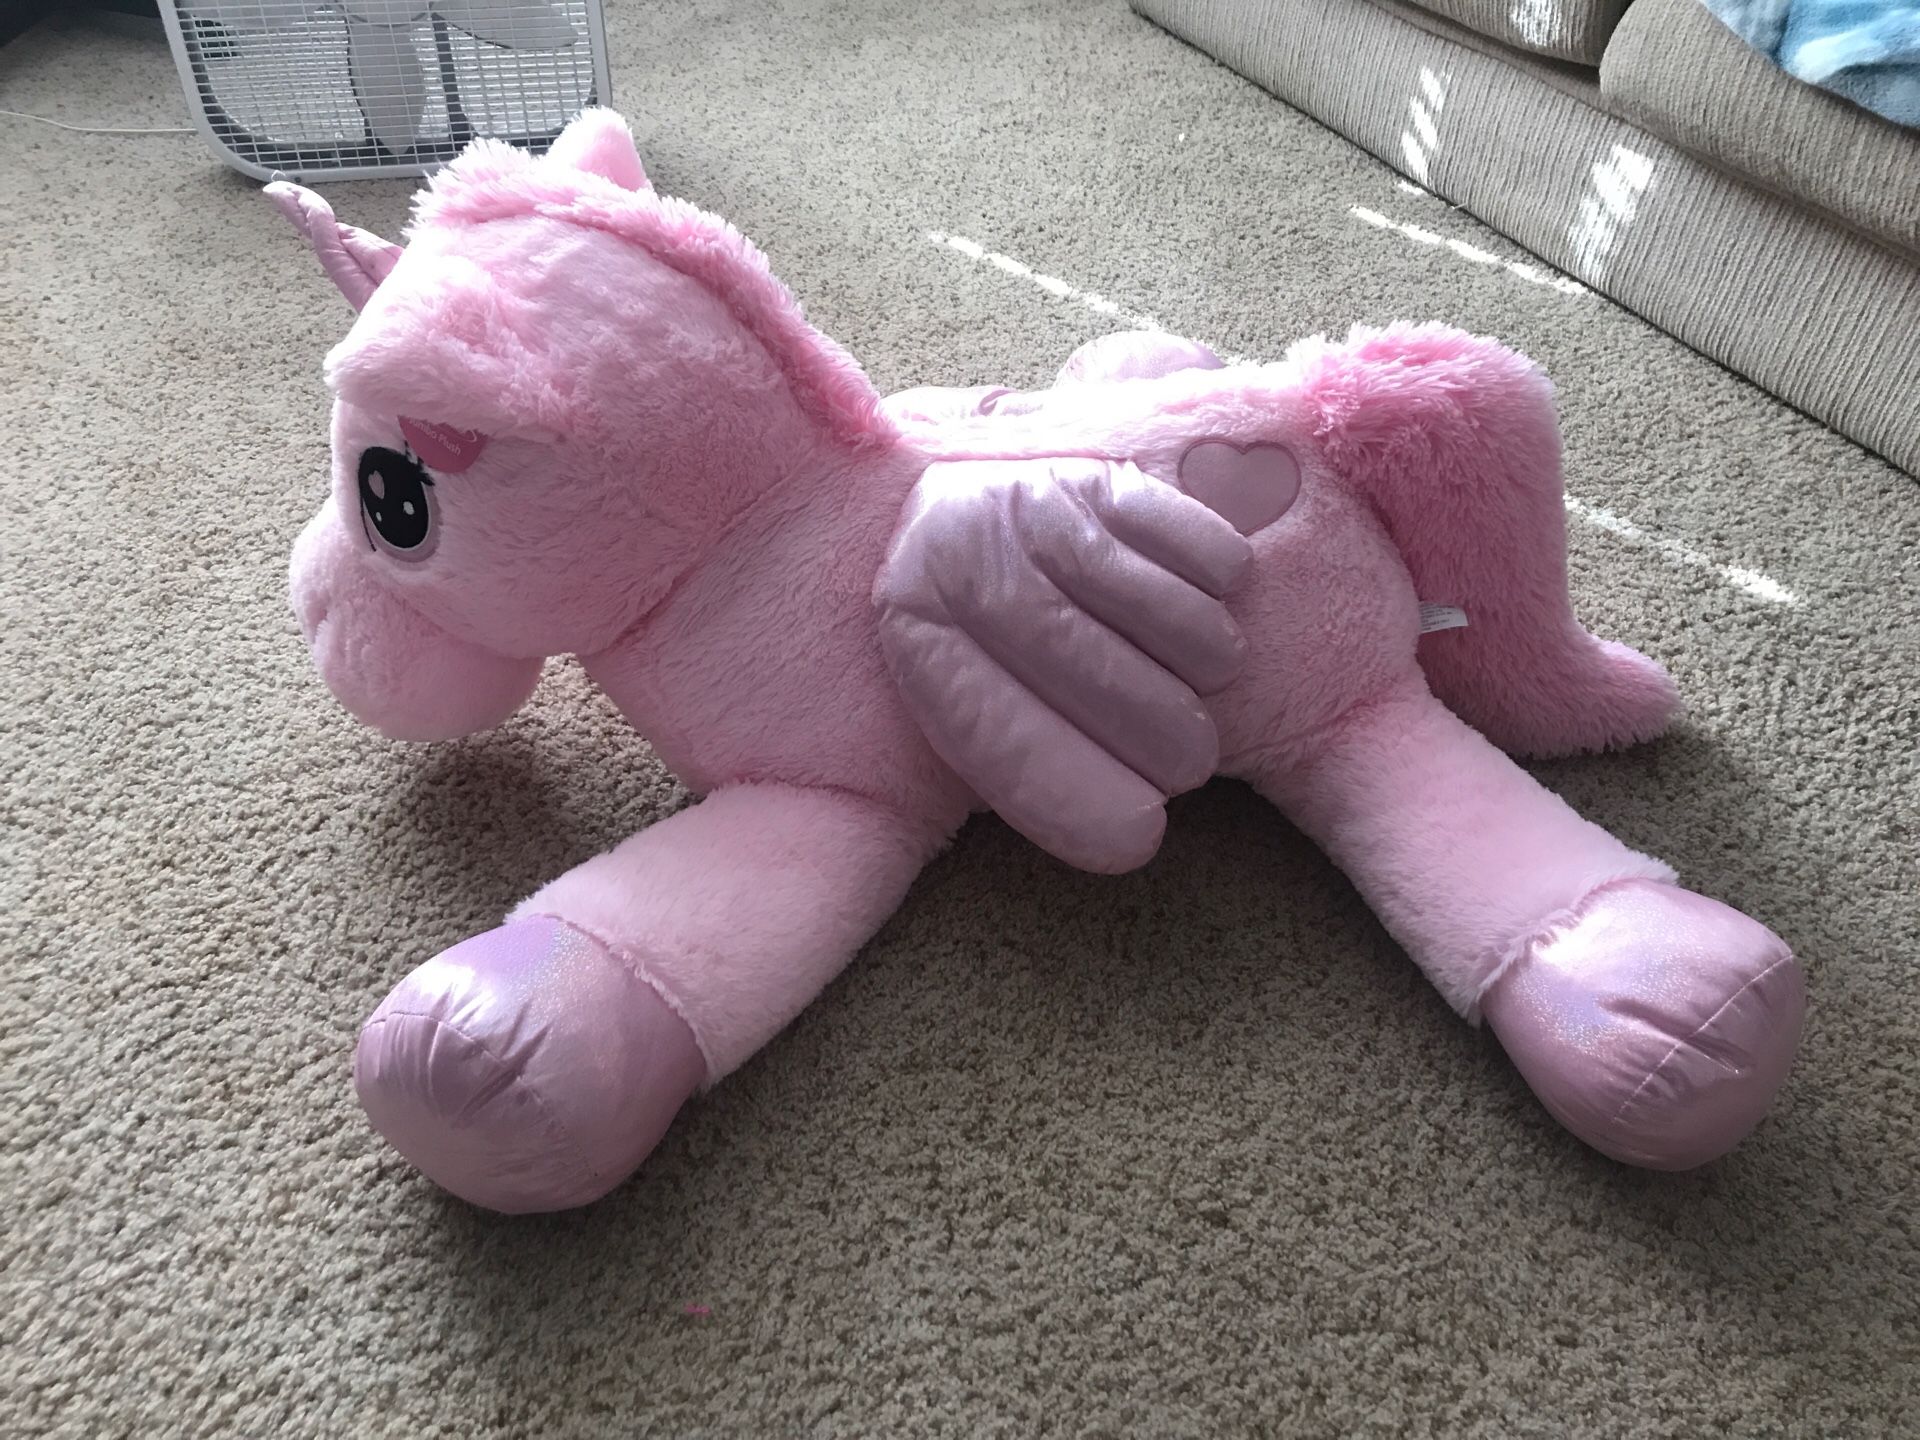 Giant pink unicorn stuffed animal